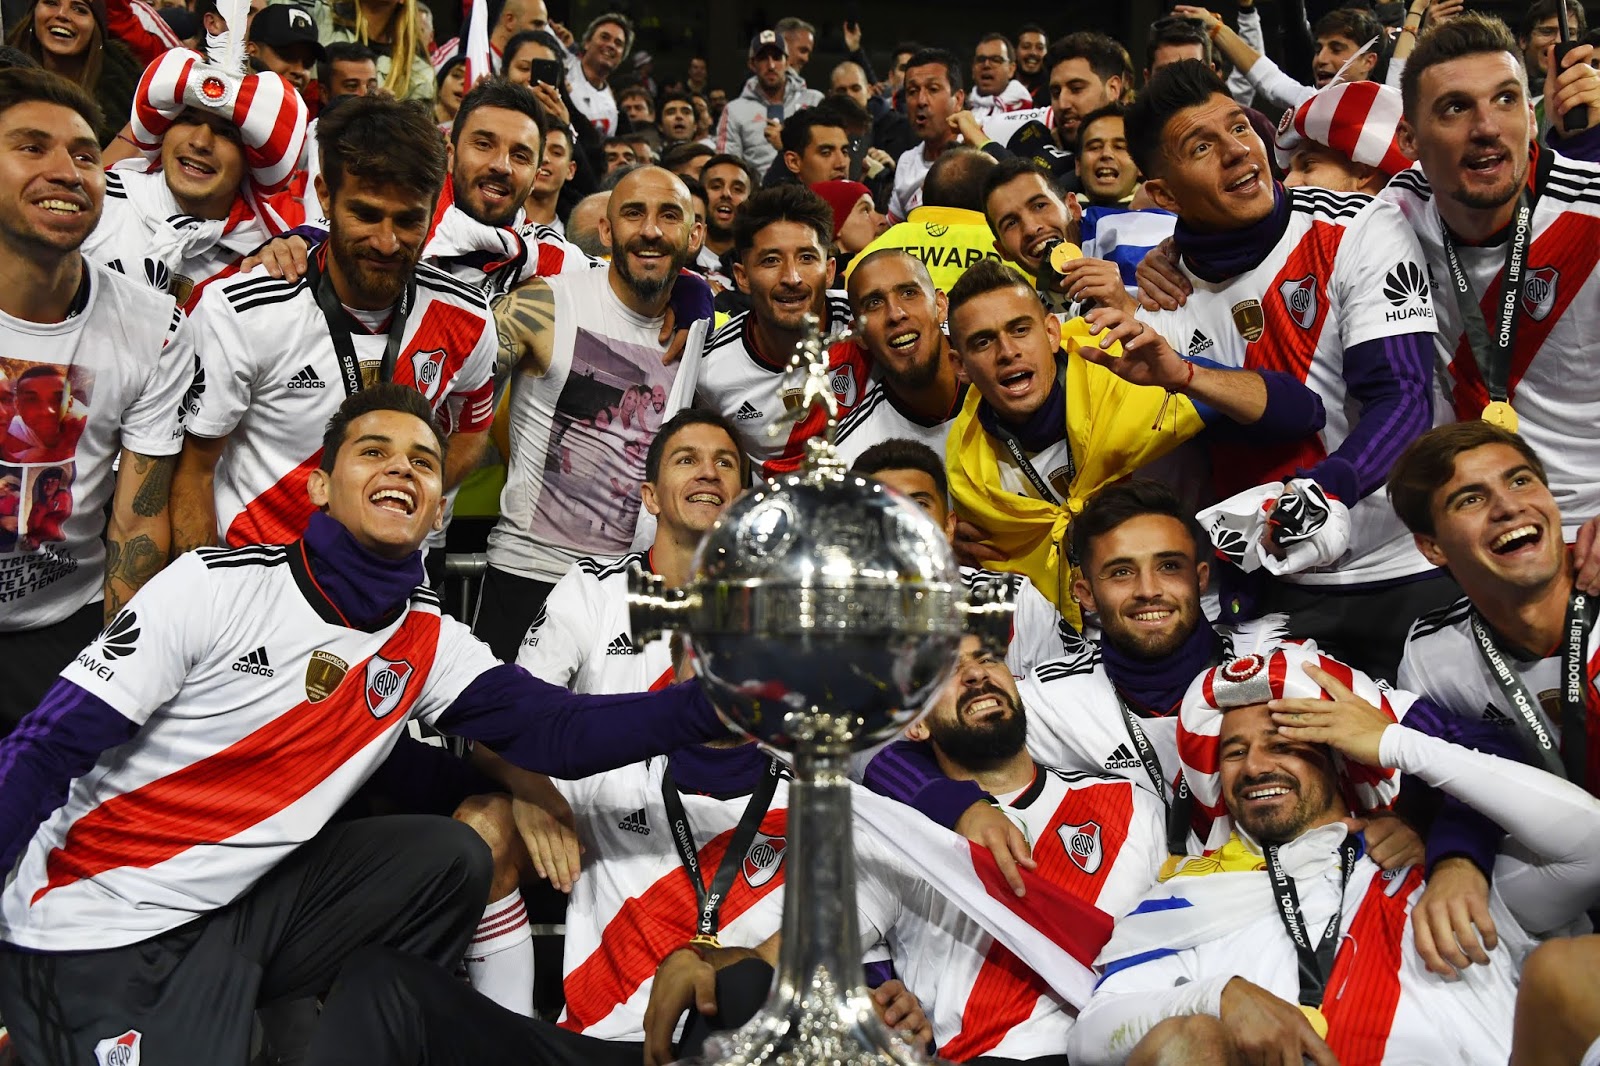 Galeria River Campeón De La Copa Libertadores En Mas De 100 Fotos